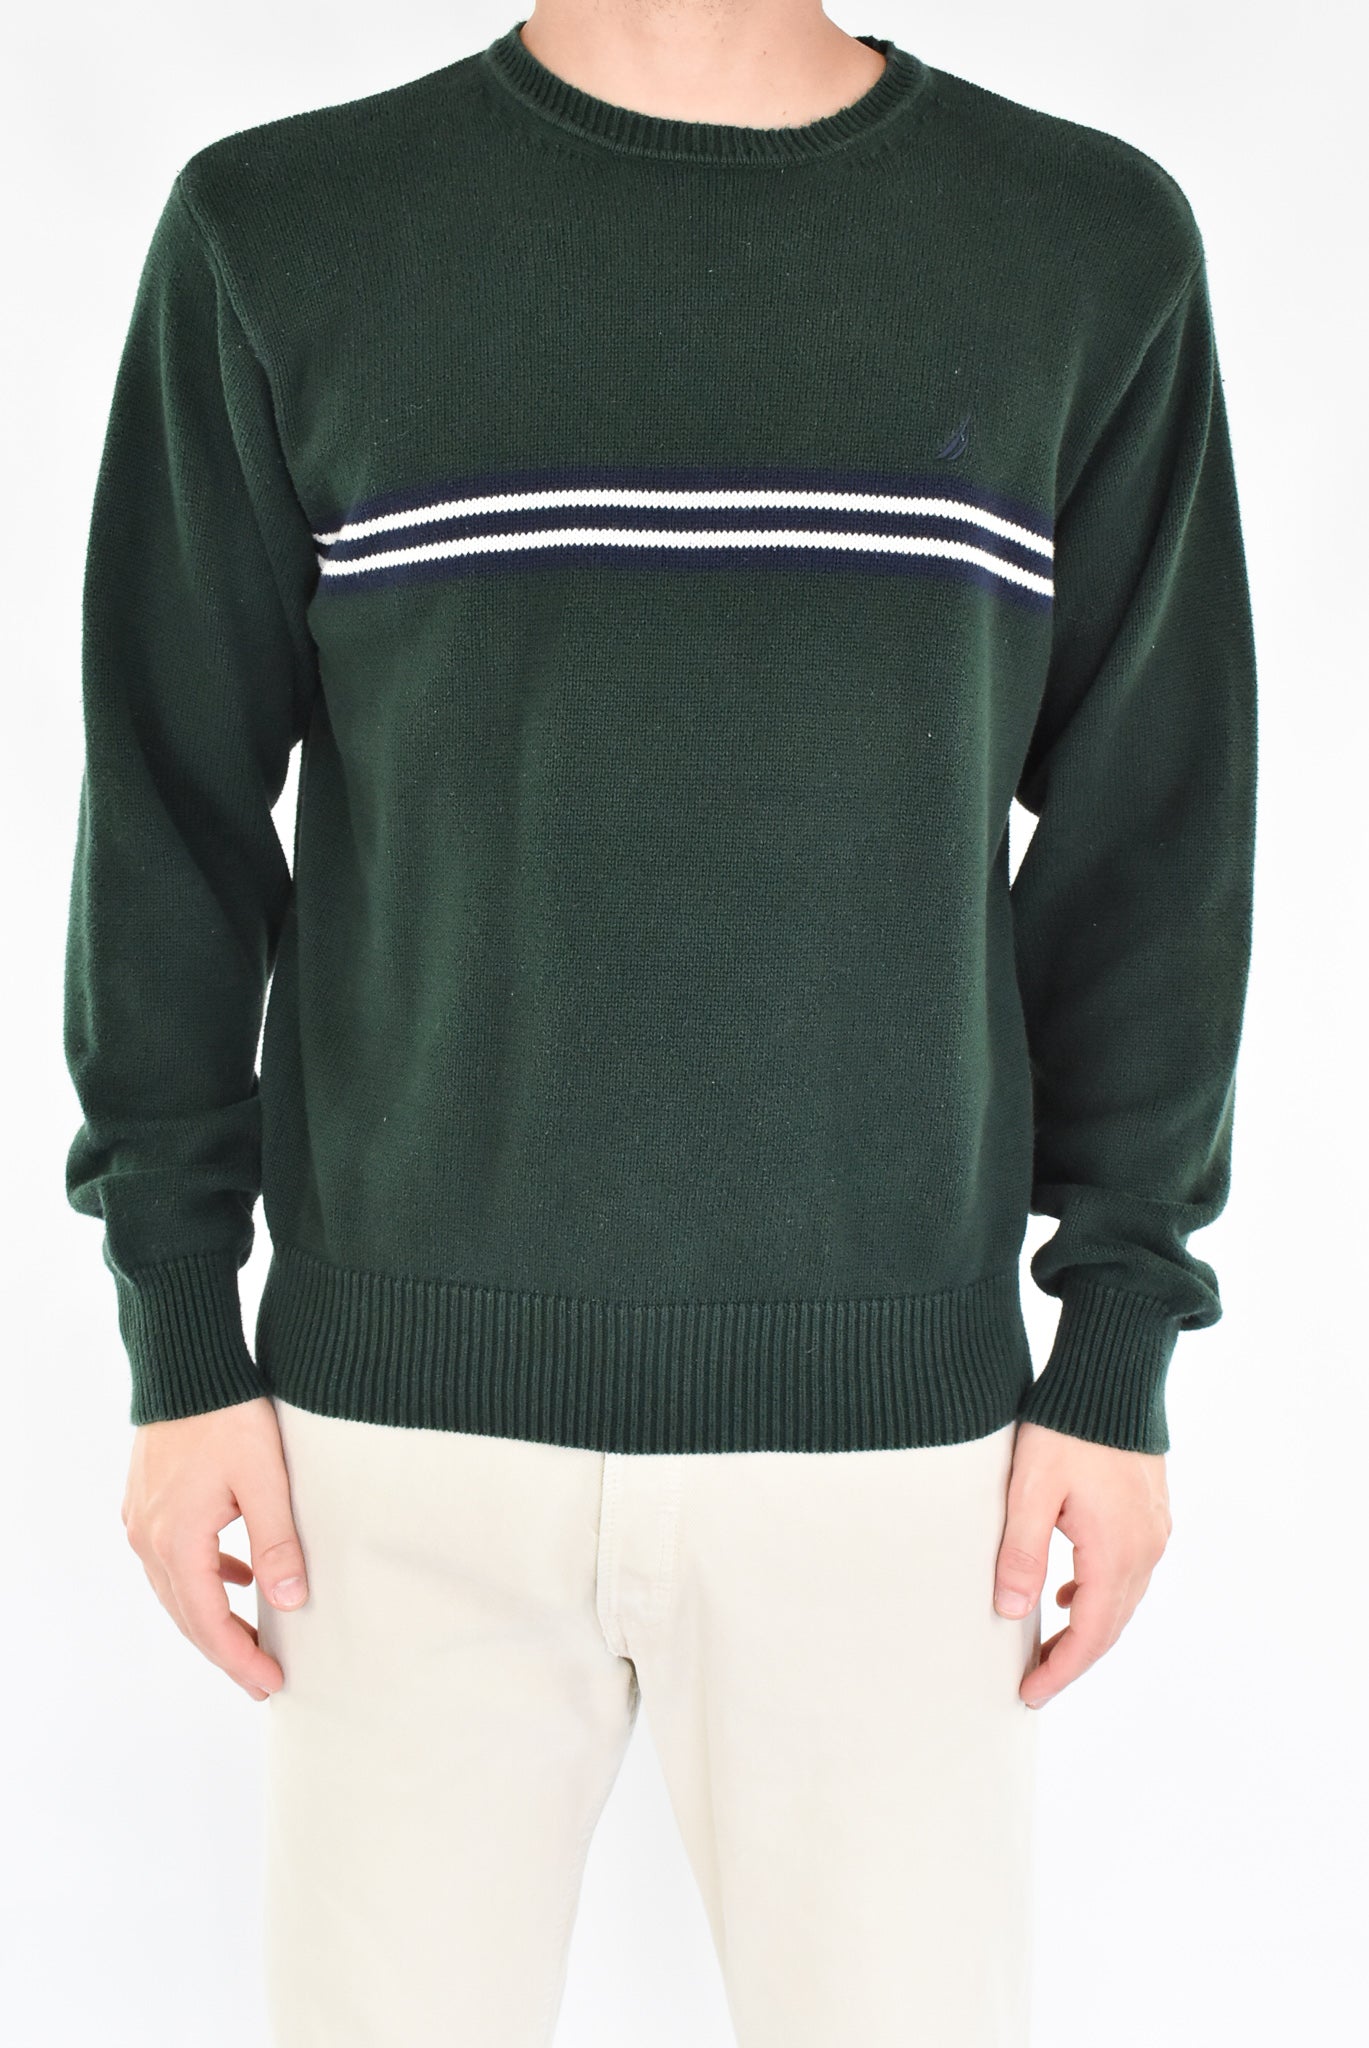 Nautica Knitted Sweater